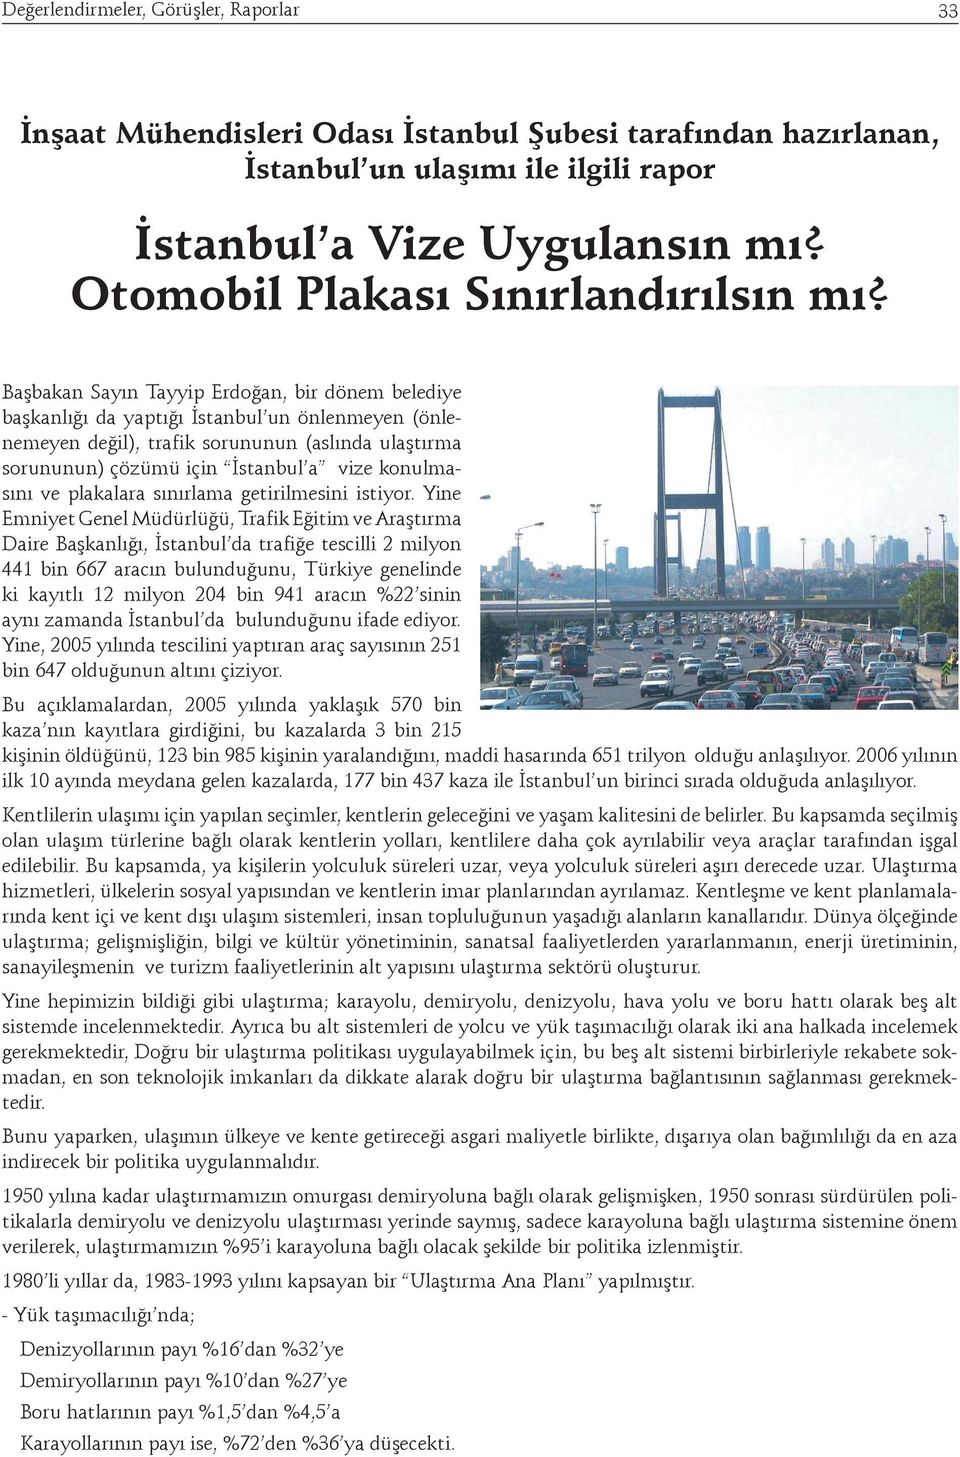 Başbakan Sayın Tayyip Erdoğan, bir dönem belediye başkanlığı da yaptığı İstanbul un önlenmeyen (önlenemeyen değil), trafik sorununun (aslında ulaştırma sorununun) çözümü için İstanbul a vize